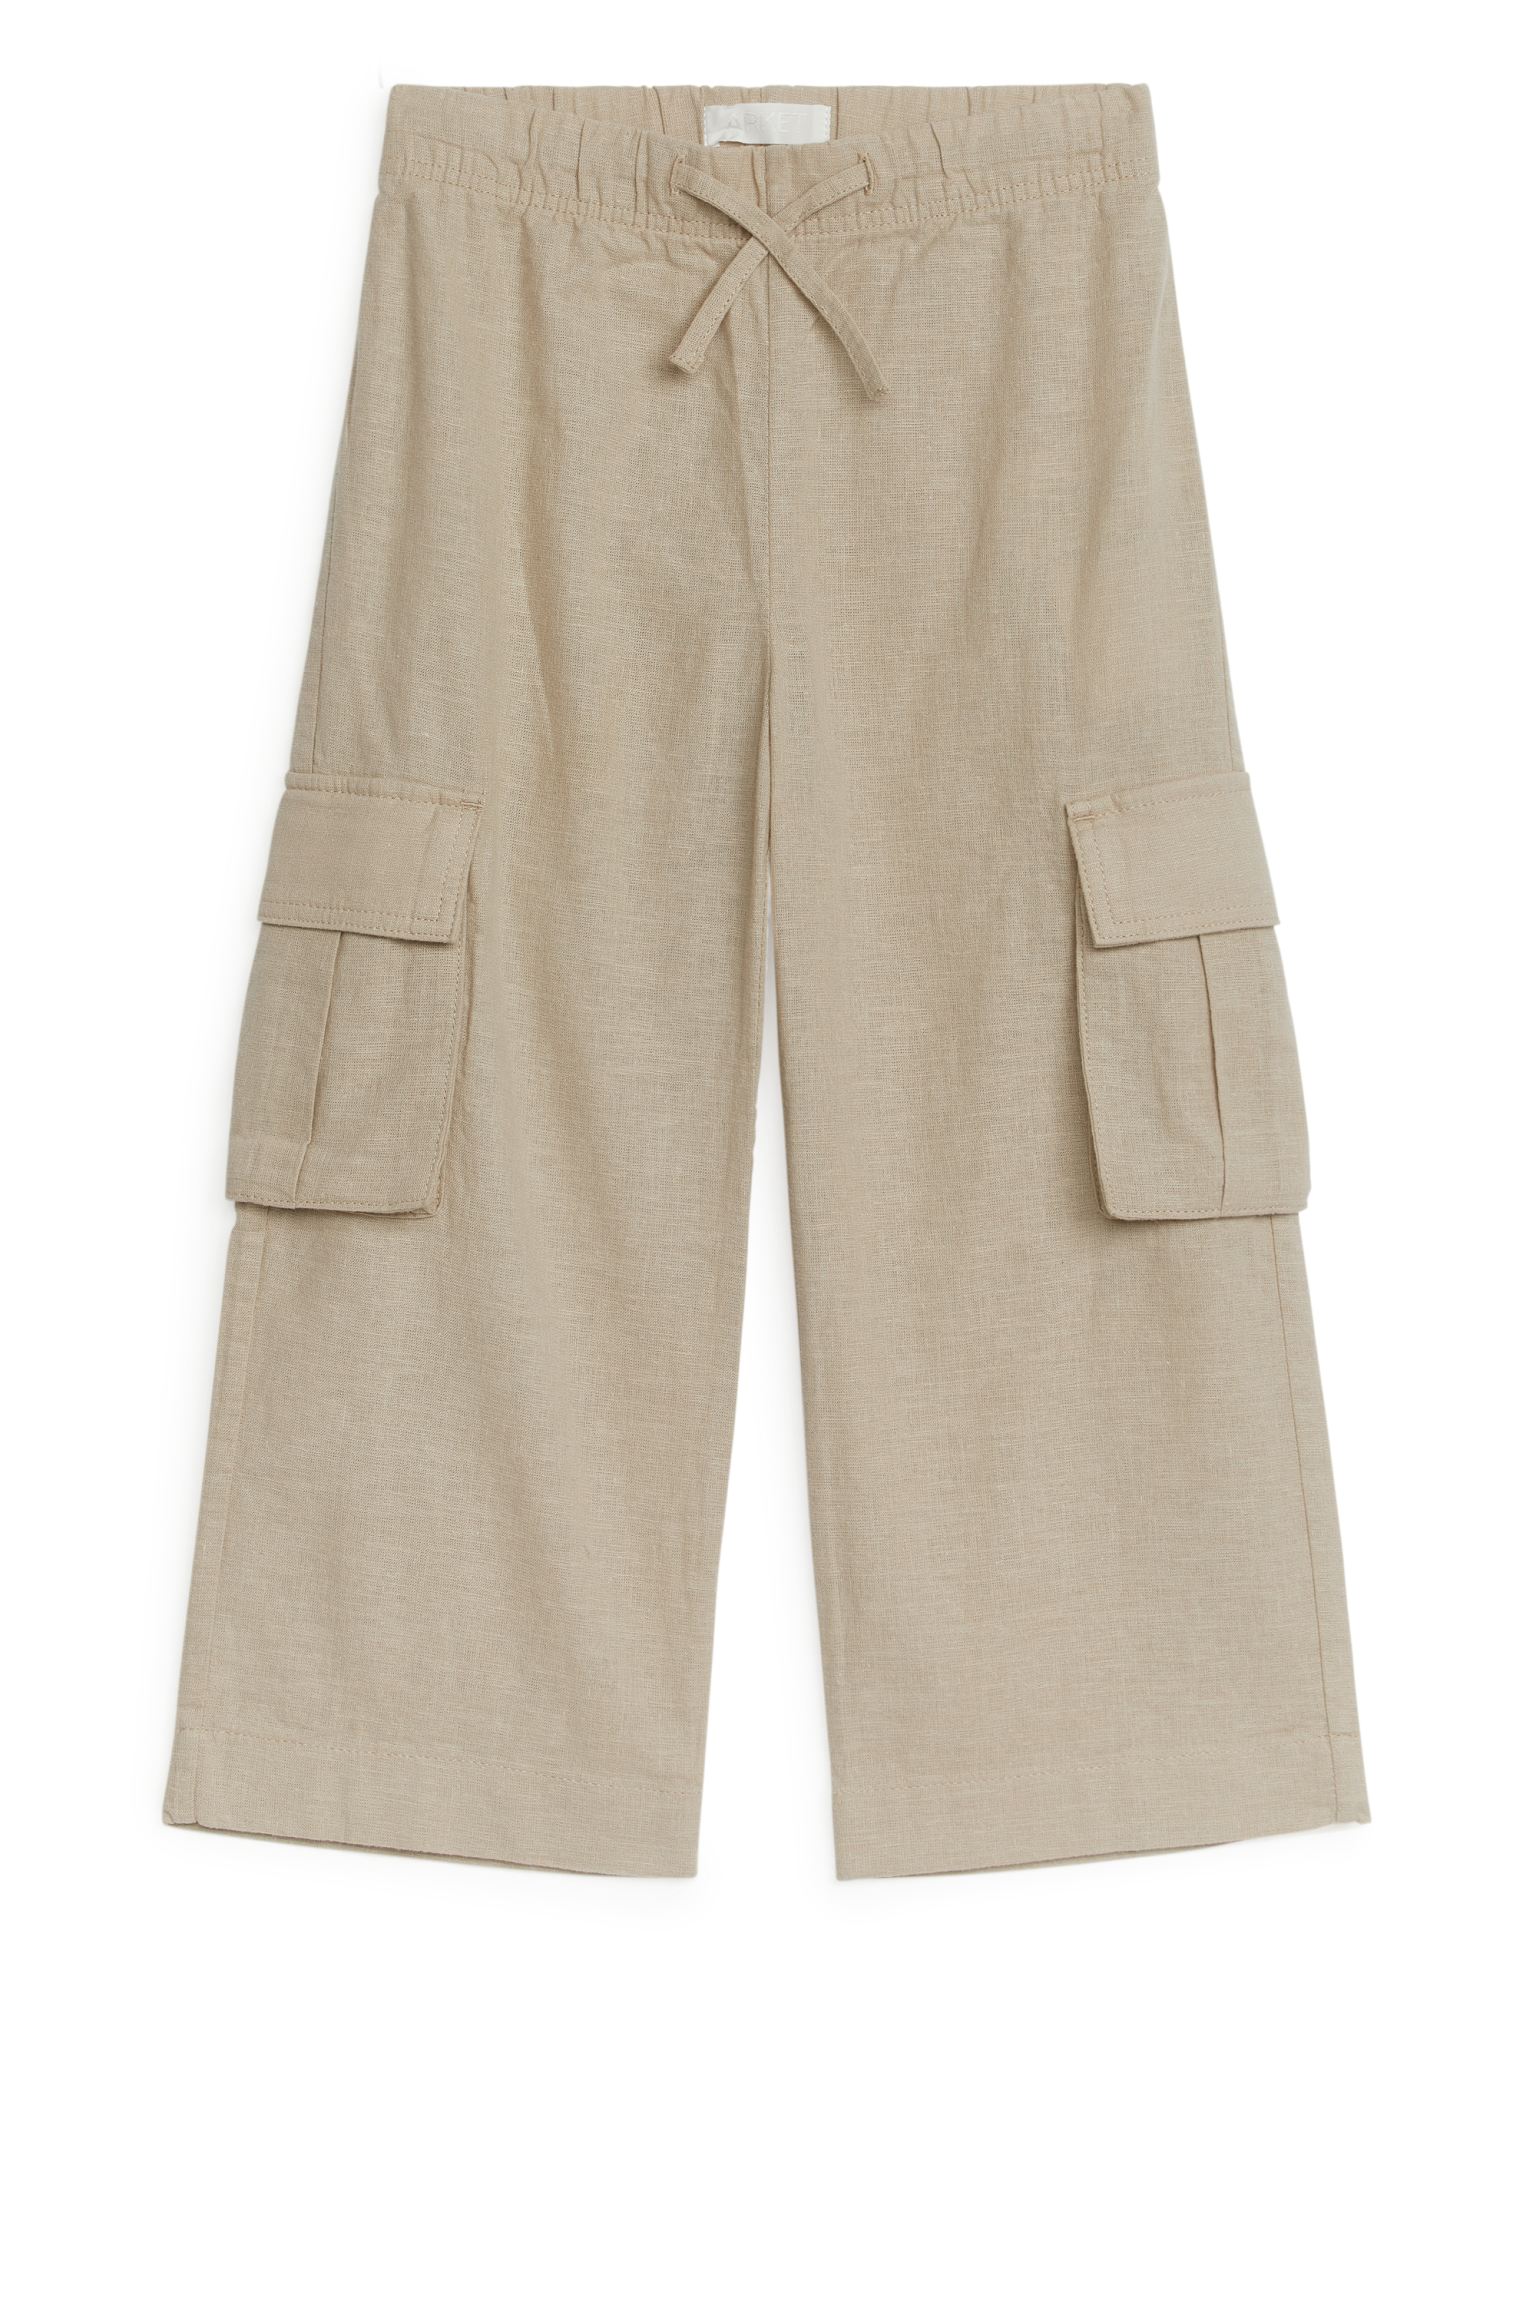 Универсальные льняные брюки ARKET для девочек 110 бежевый (доставка из-за рубежа)